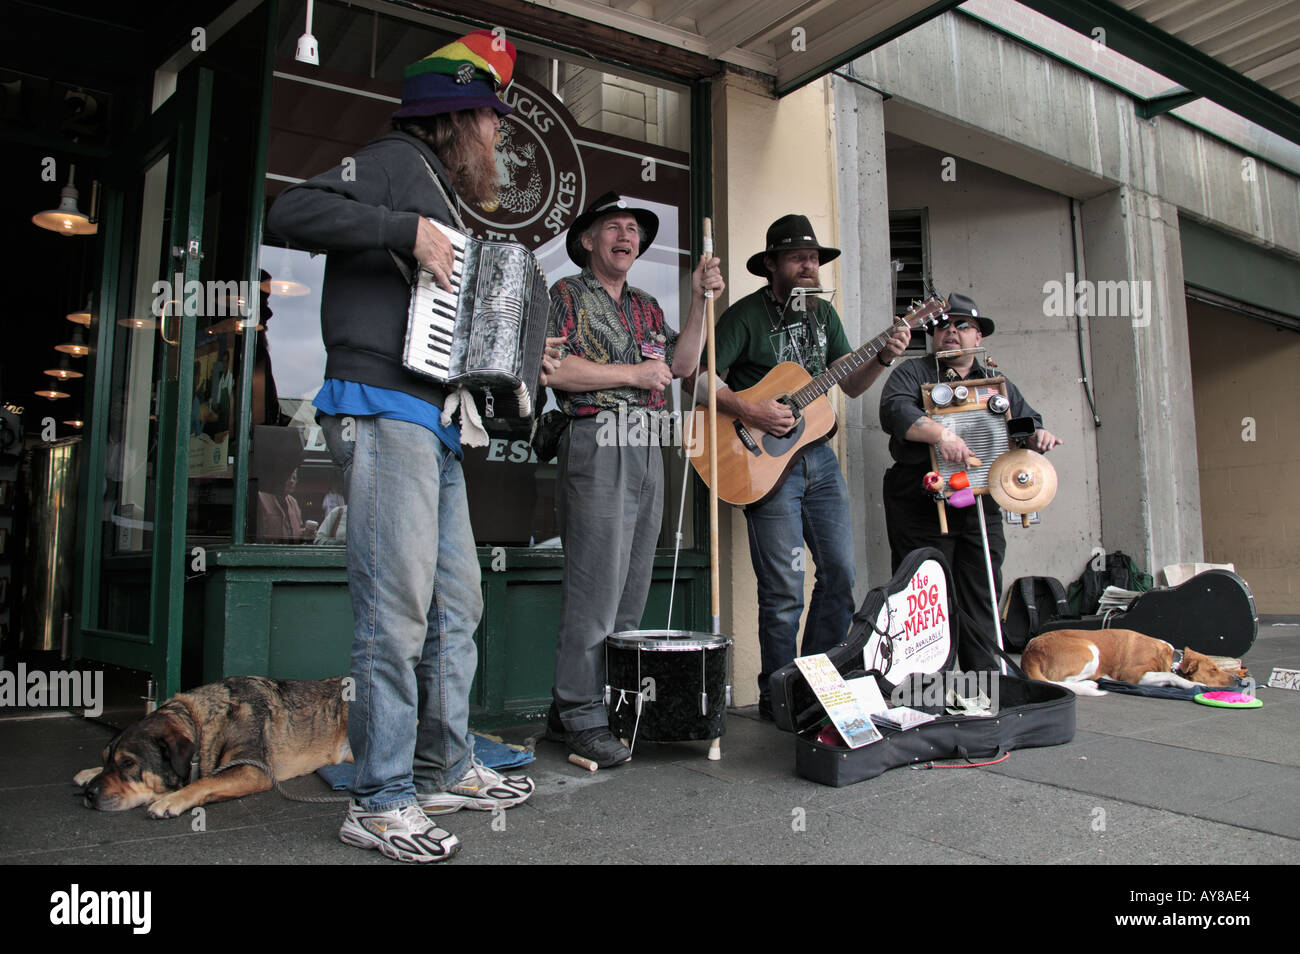 Il gruppo di quattro musicisti di strada eseguire sul marciapiede davanti a un caffè Starbucks store presso il Mercato di Pike Place in Seattle WA Foto Stock